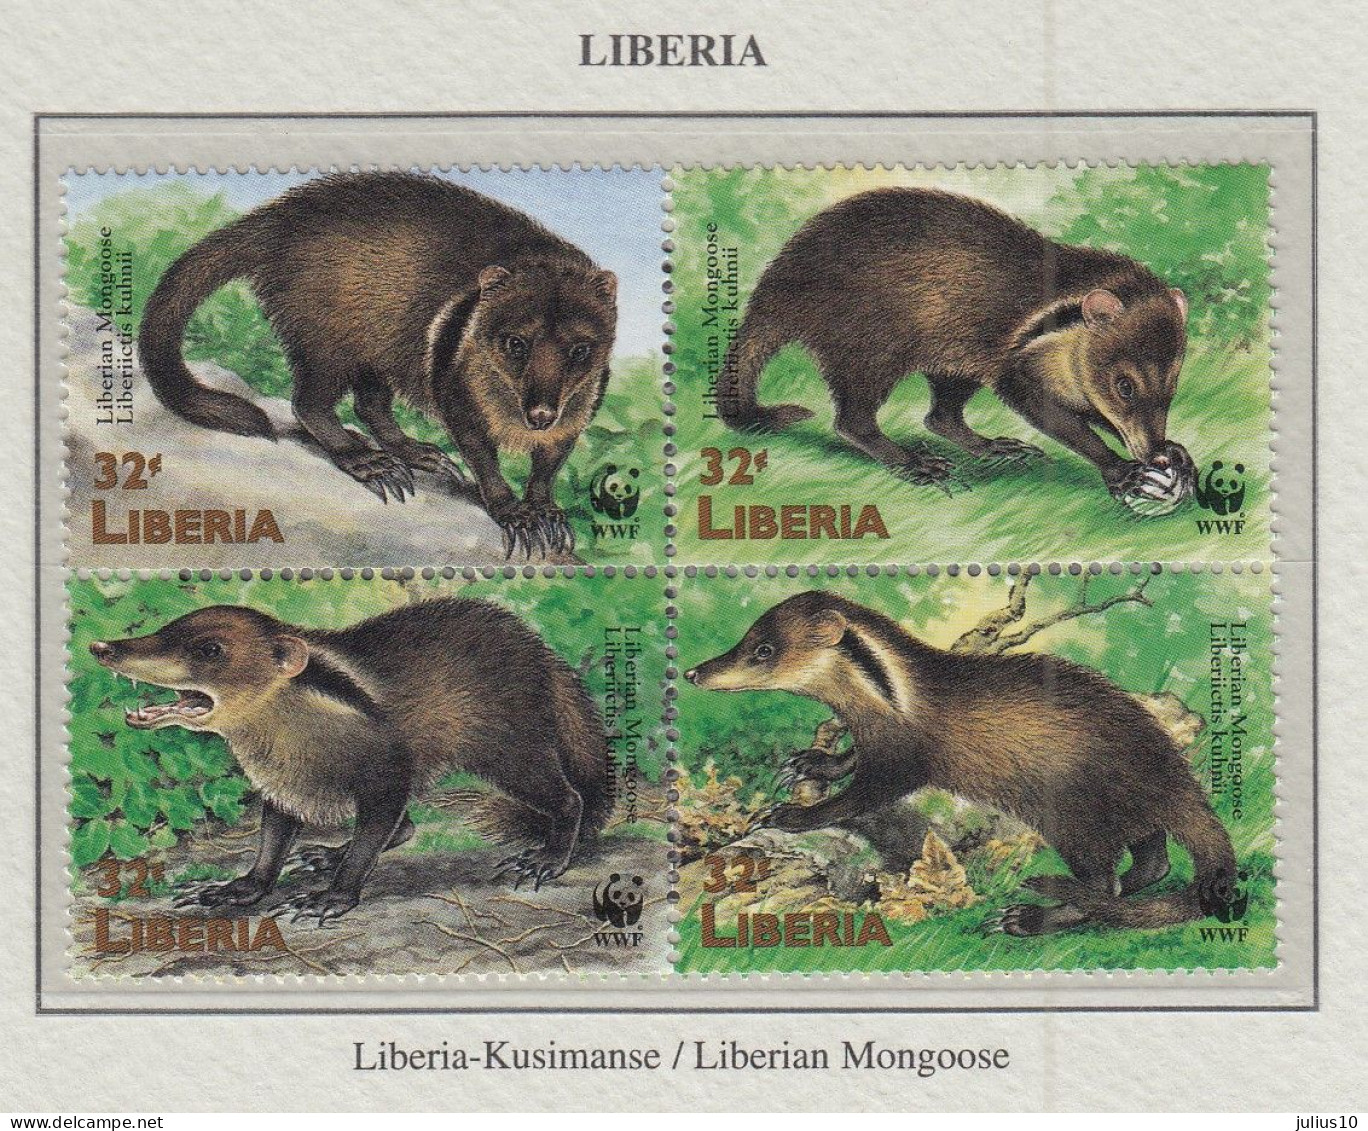 LIBERIA 1998 WWF Animals Manguste Mi 2040-2043 MNH Fauna 595 - Nuovi